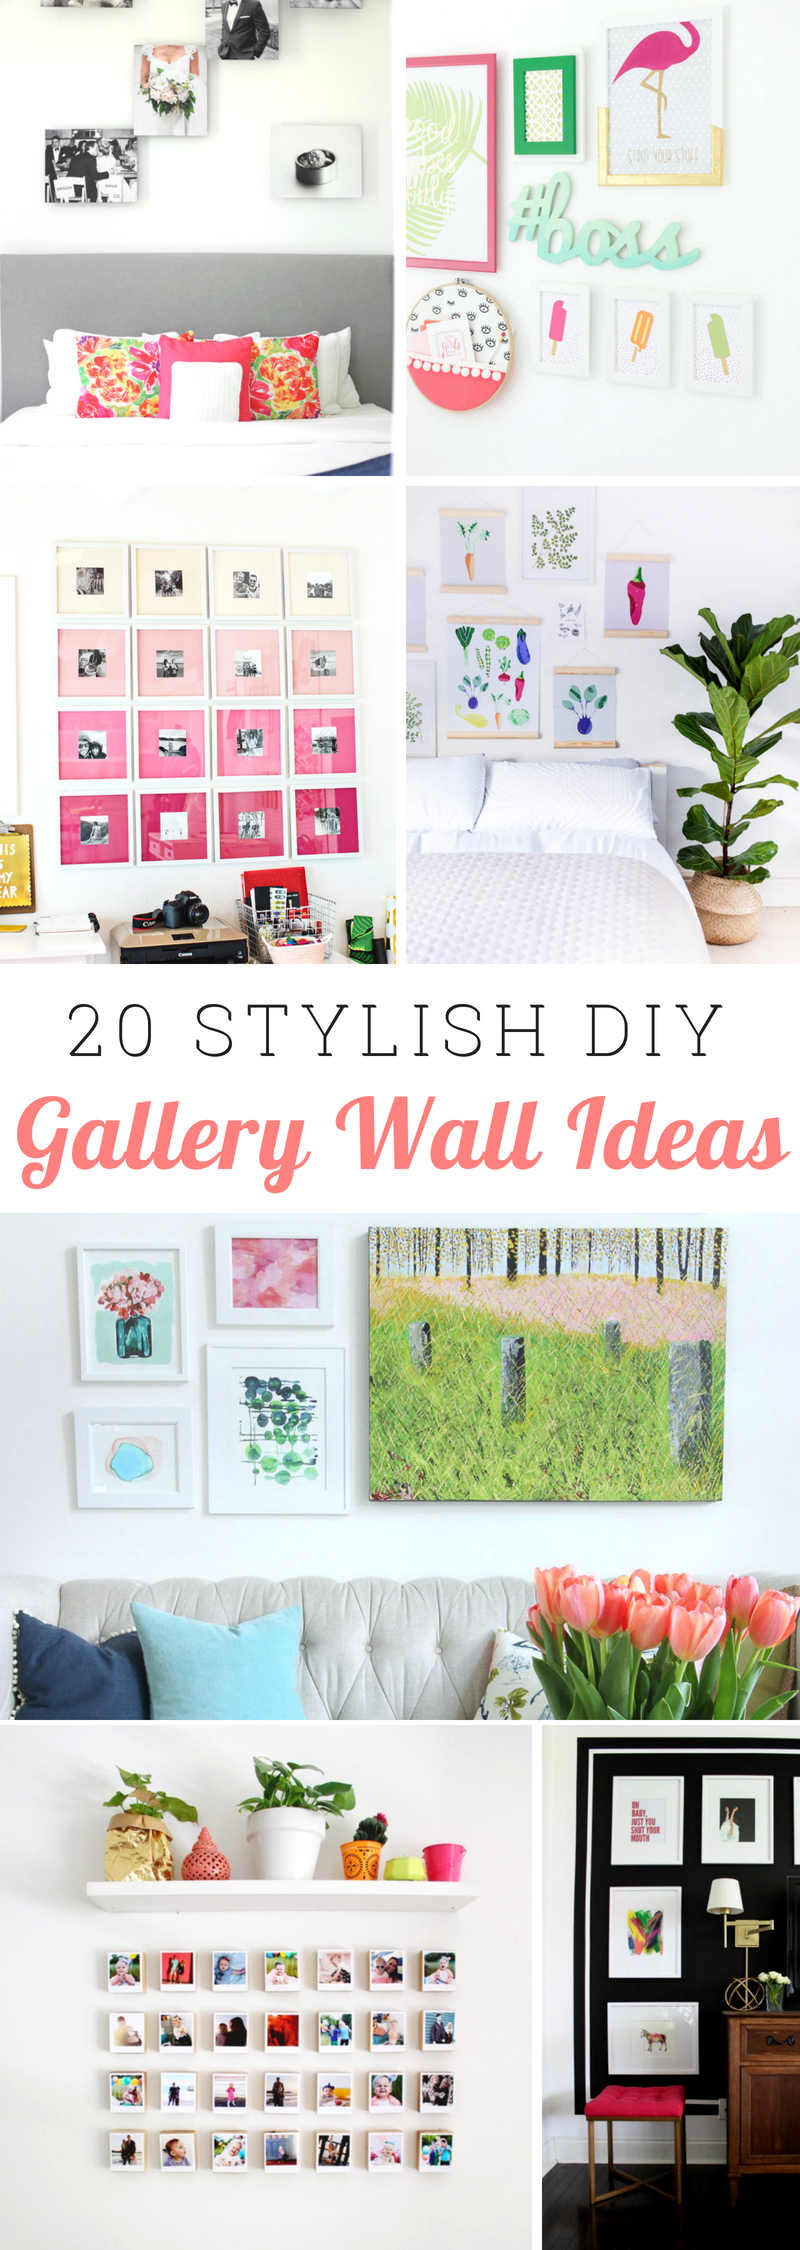 Stylish Gallery Wall Ideas 